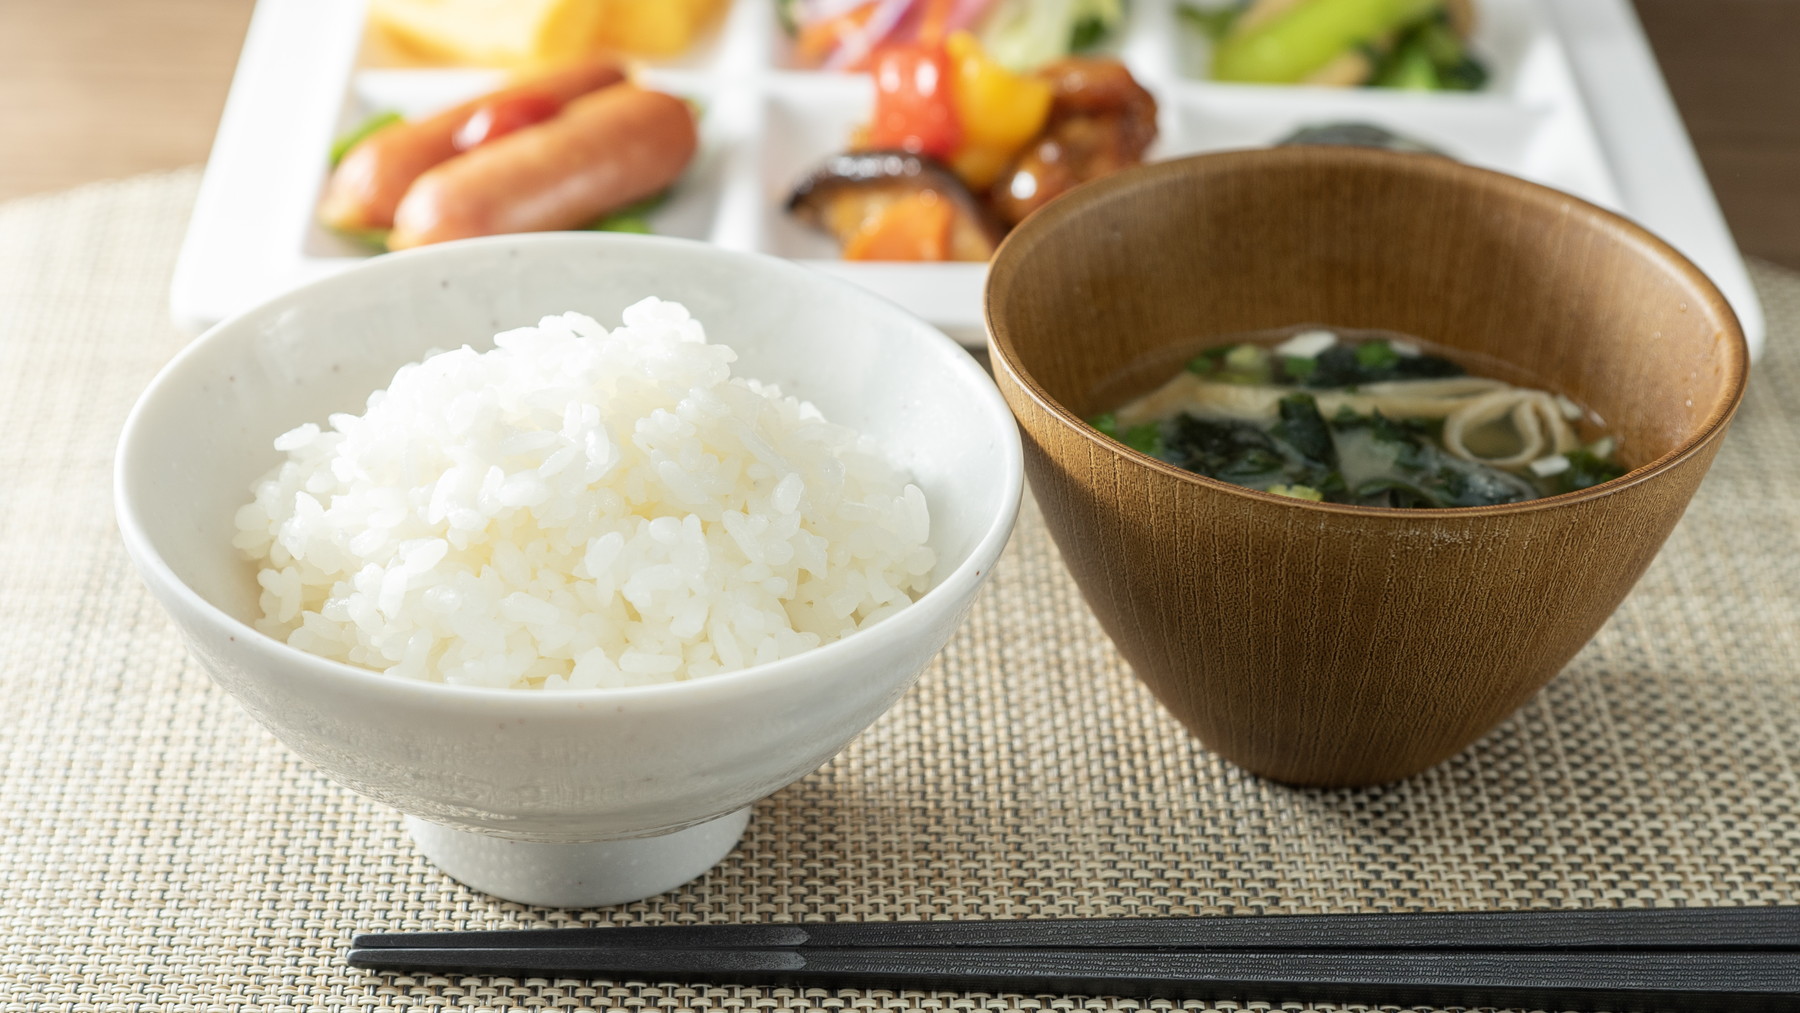 【Organic】有機大豆・有機米を使用したお味噌汁でほっと一息♪